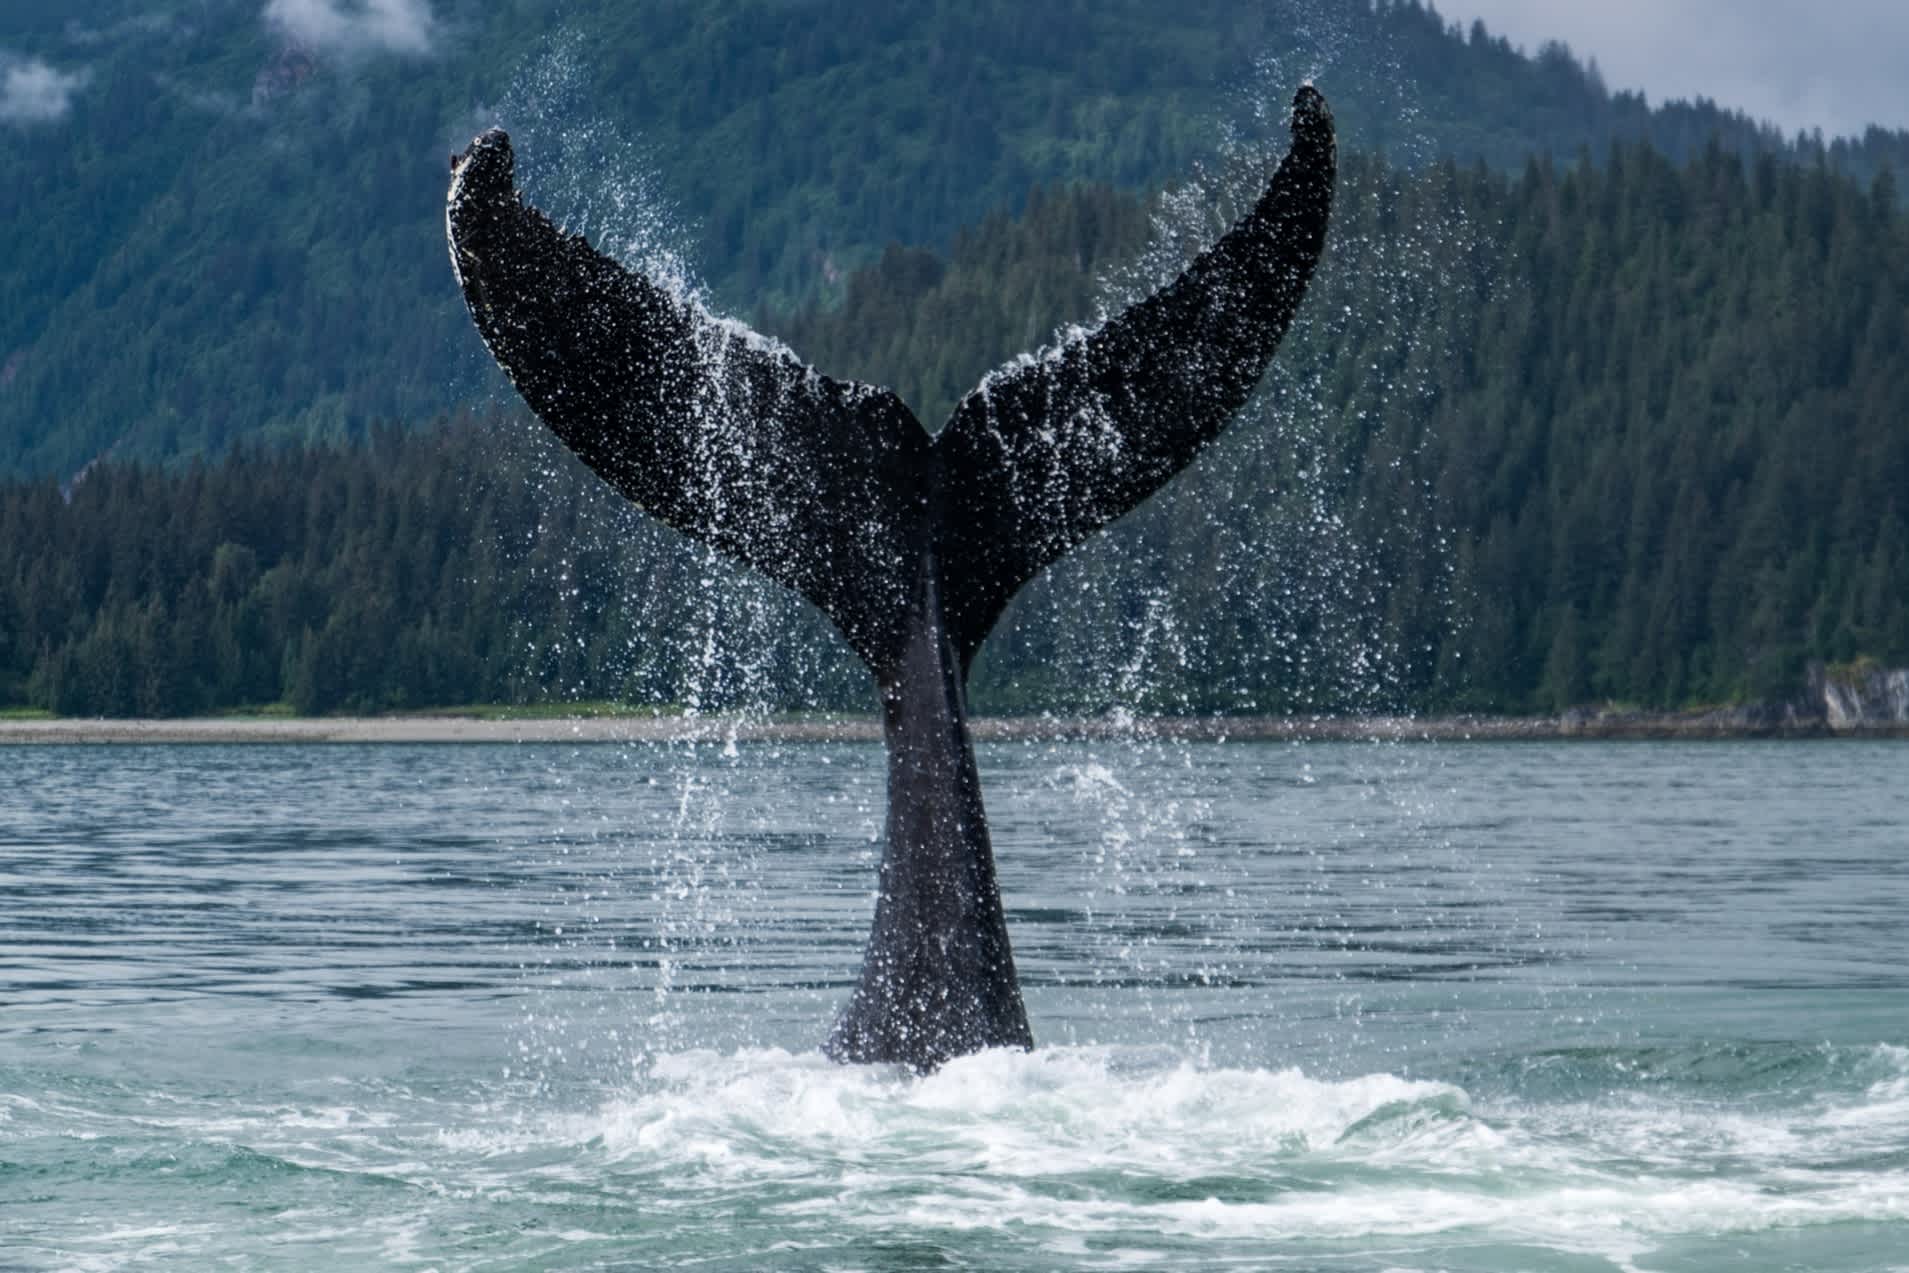 Découvrez la période idéale pour l'observation des baleines en Alaska